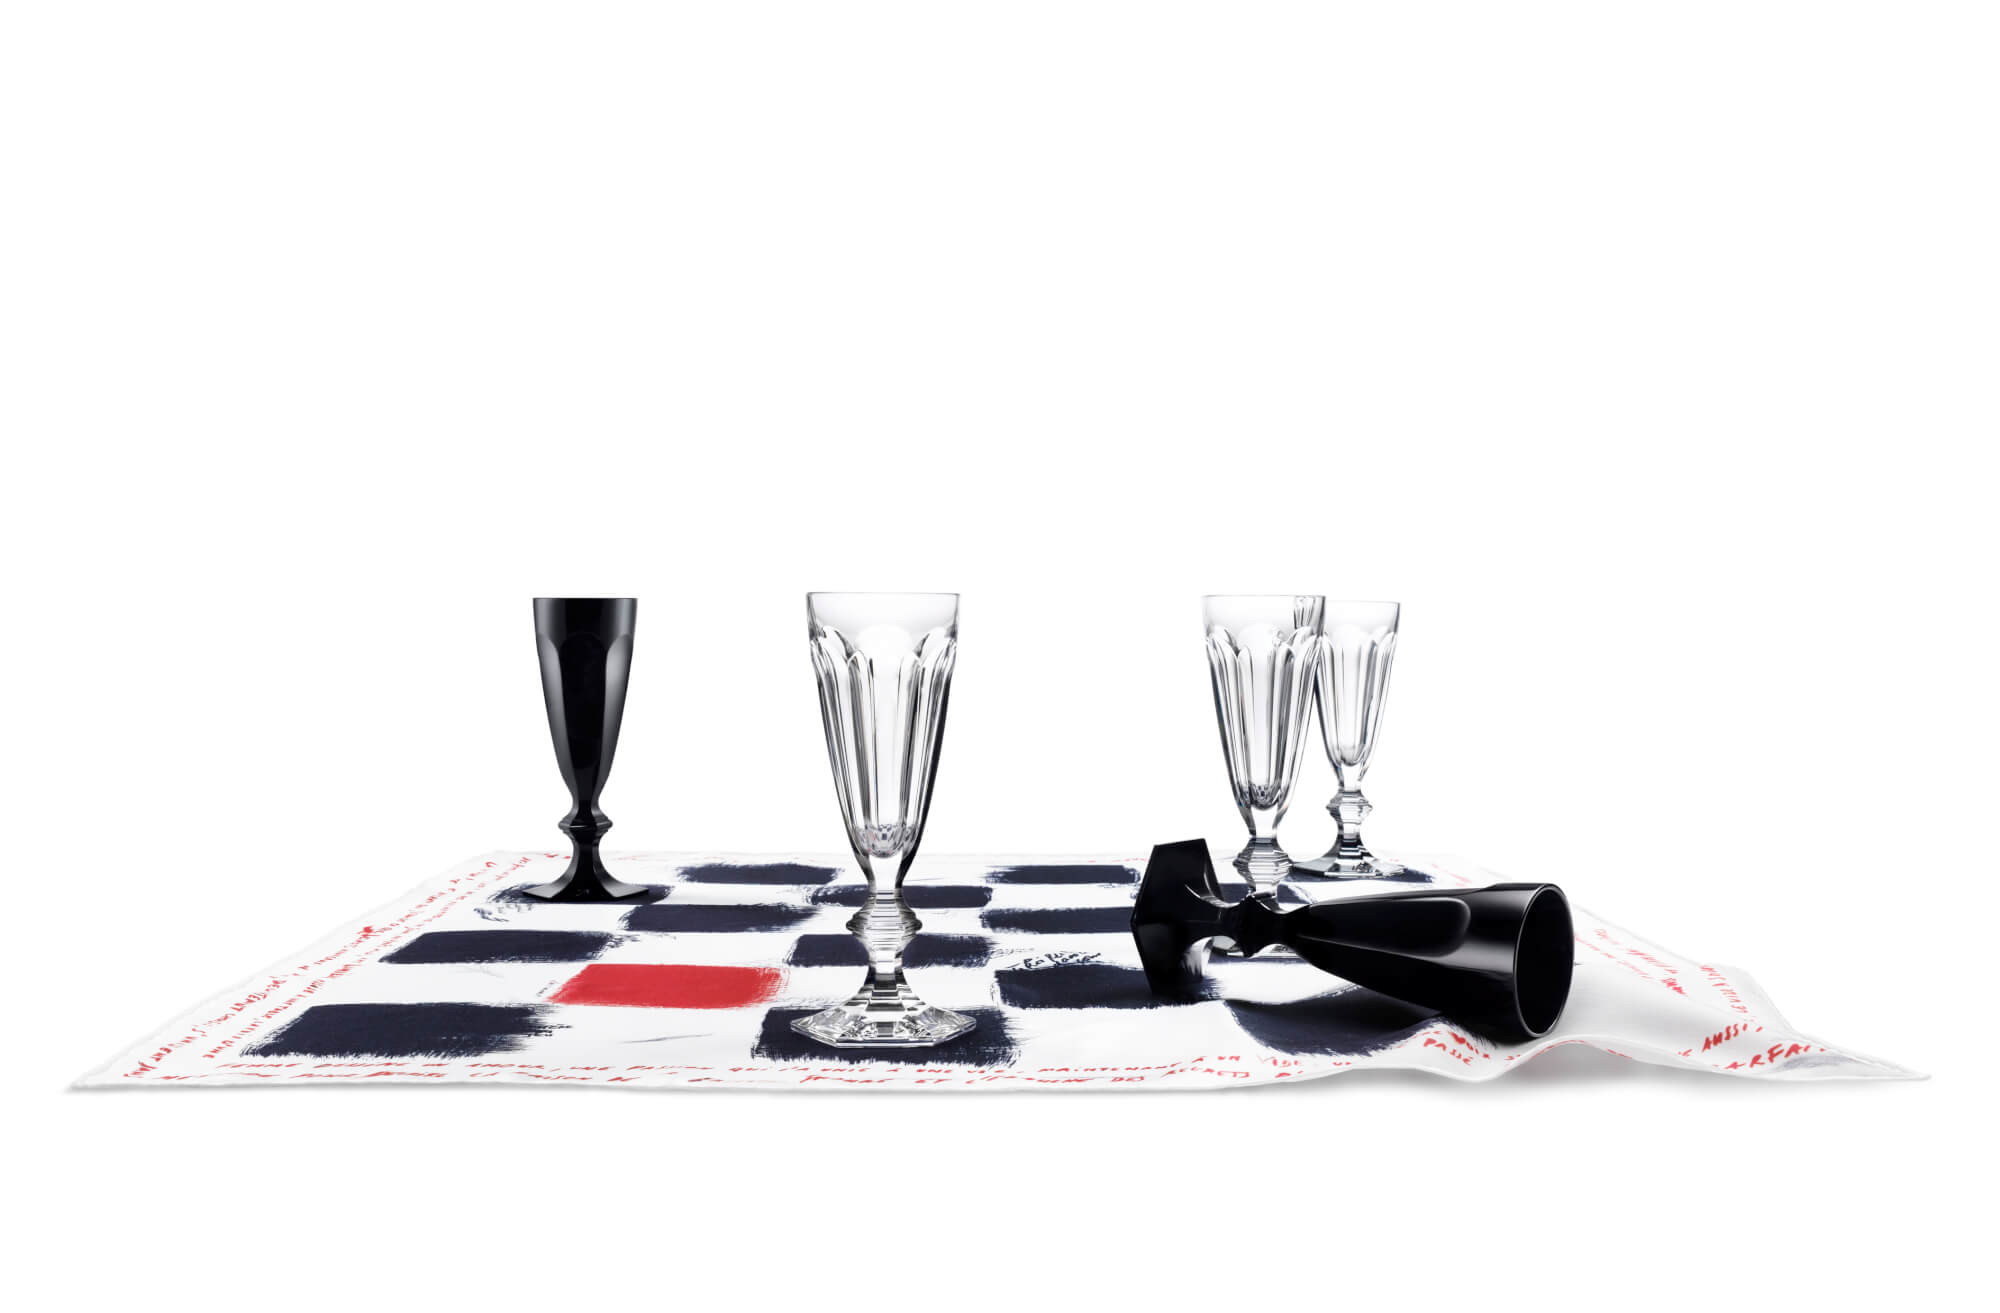 Jeu de Dames en Noir, champagne flutes (Baccarat) - Kitchen Tableware